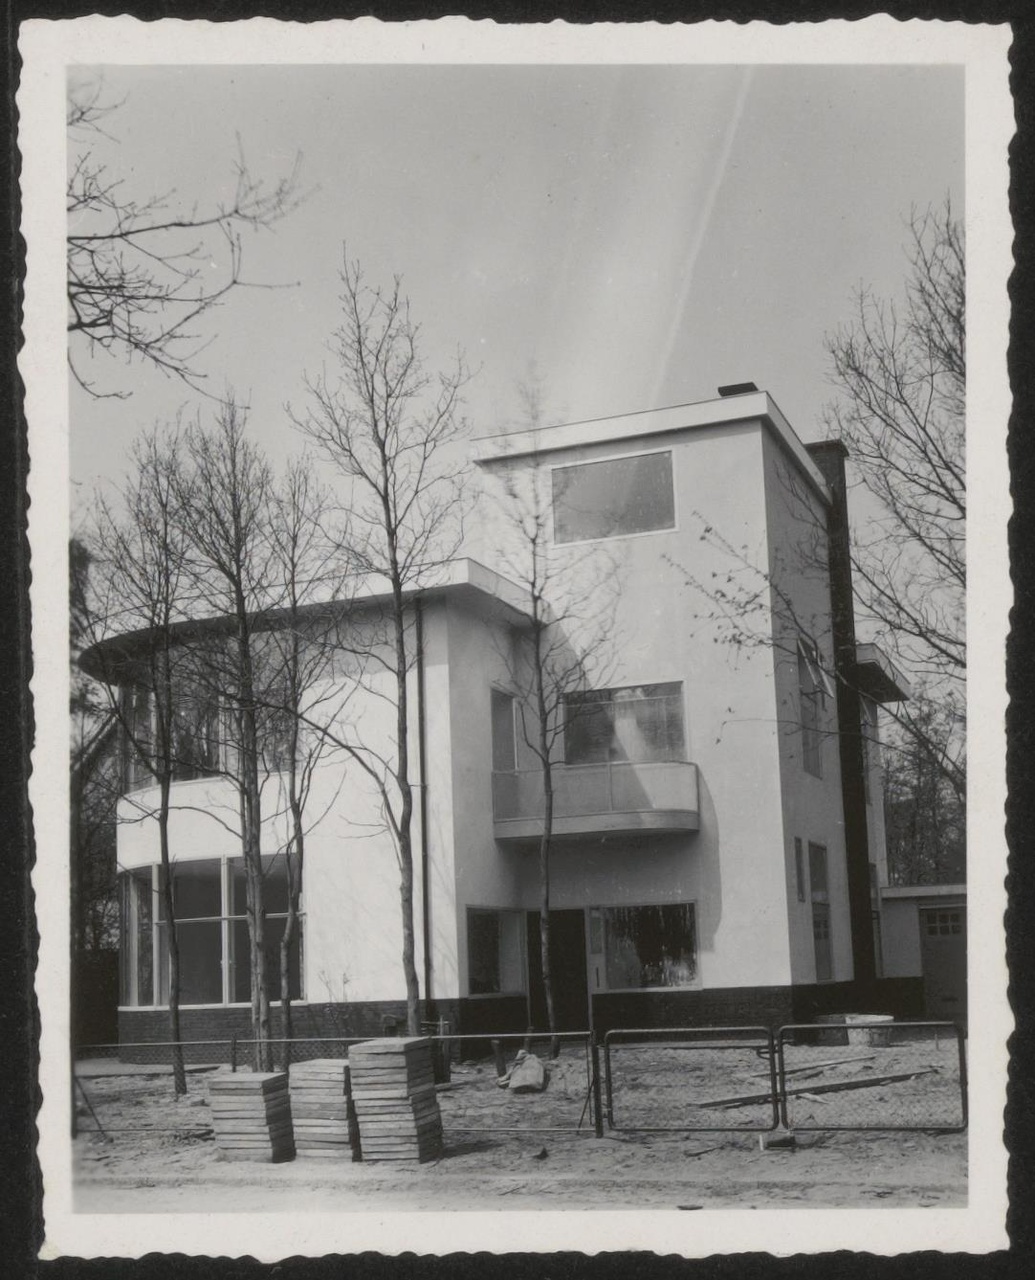 Afbeelding van woning Wijburg, nog onbewoond, 1939, hoek entree